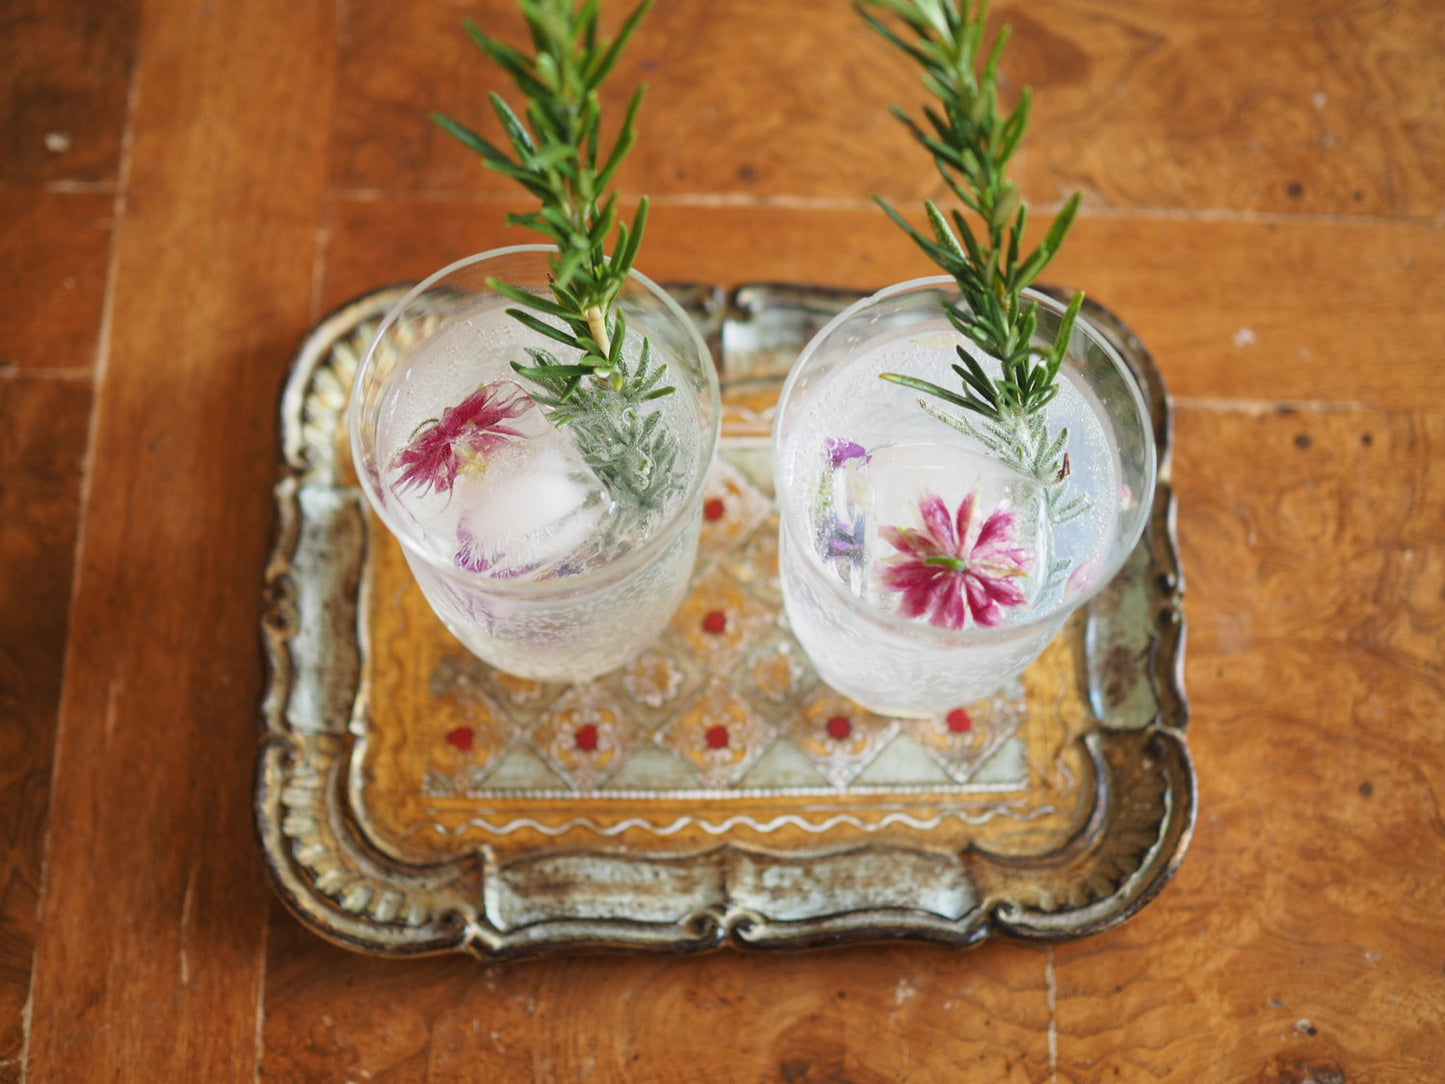 Floral Elixir Co. Flower Syrups for Cocktails, Teas, & More (8.5 oz)